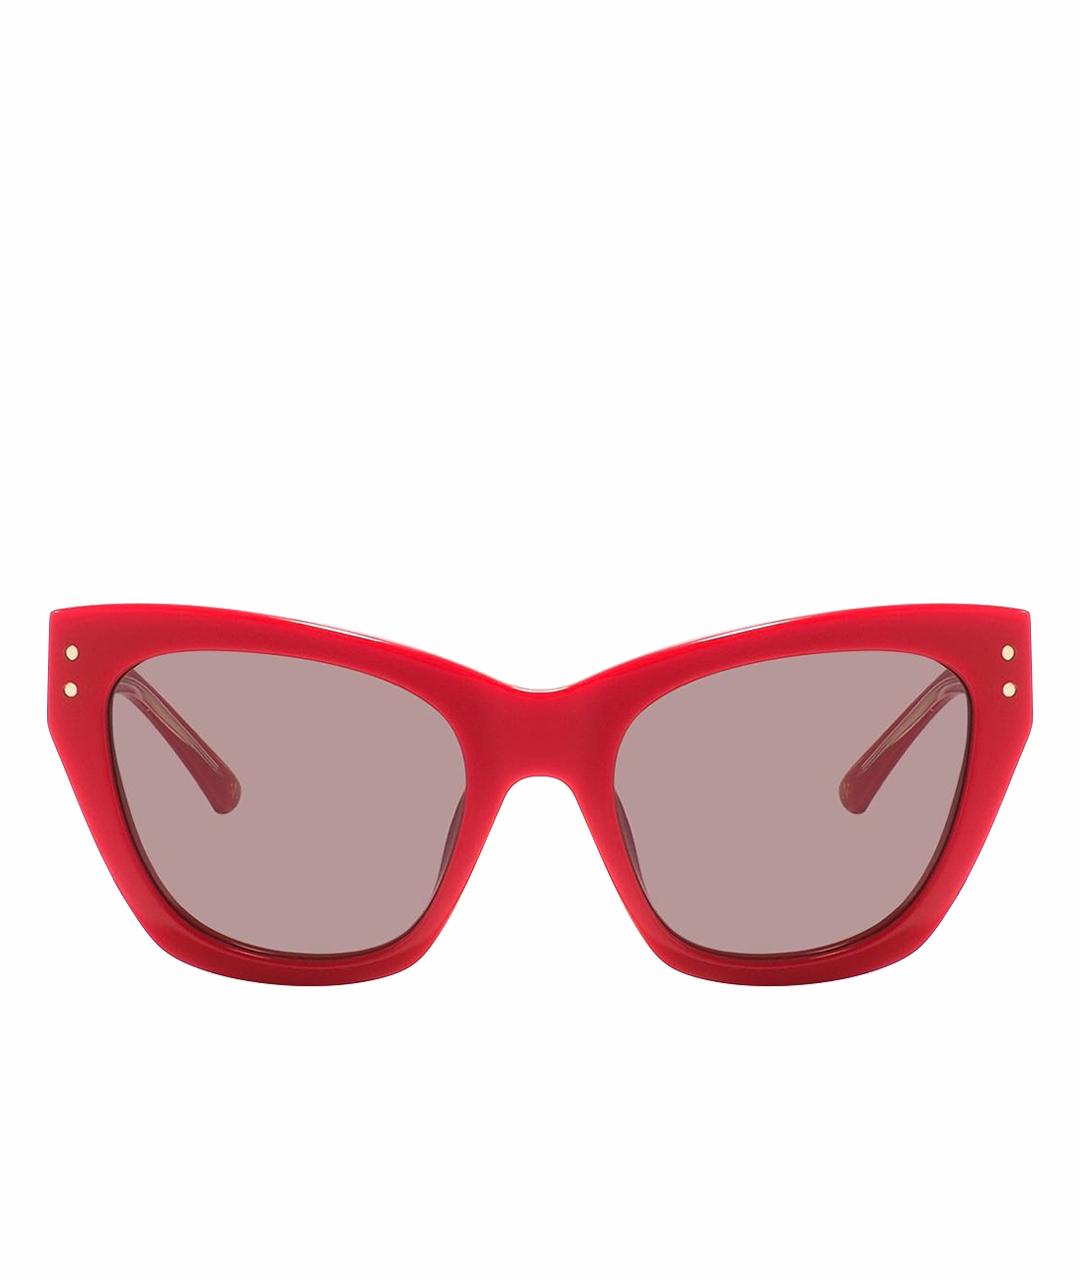 NINA RICCI PRE-OWNED Красные пластиковые солнцезащитные очки, фото 1